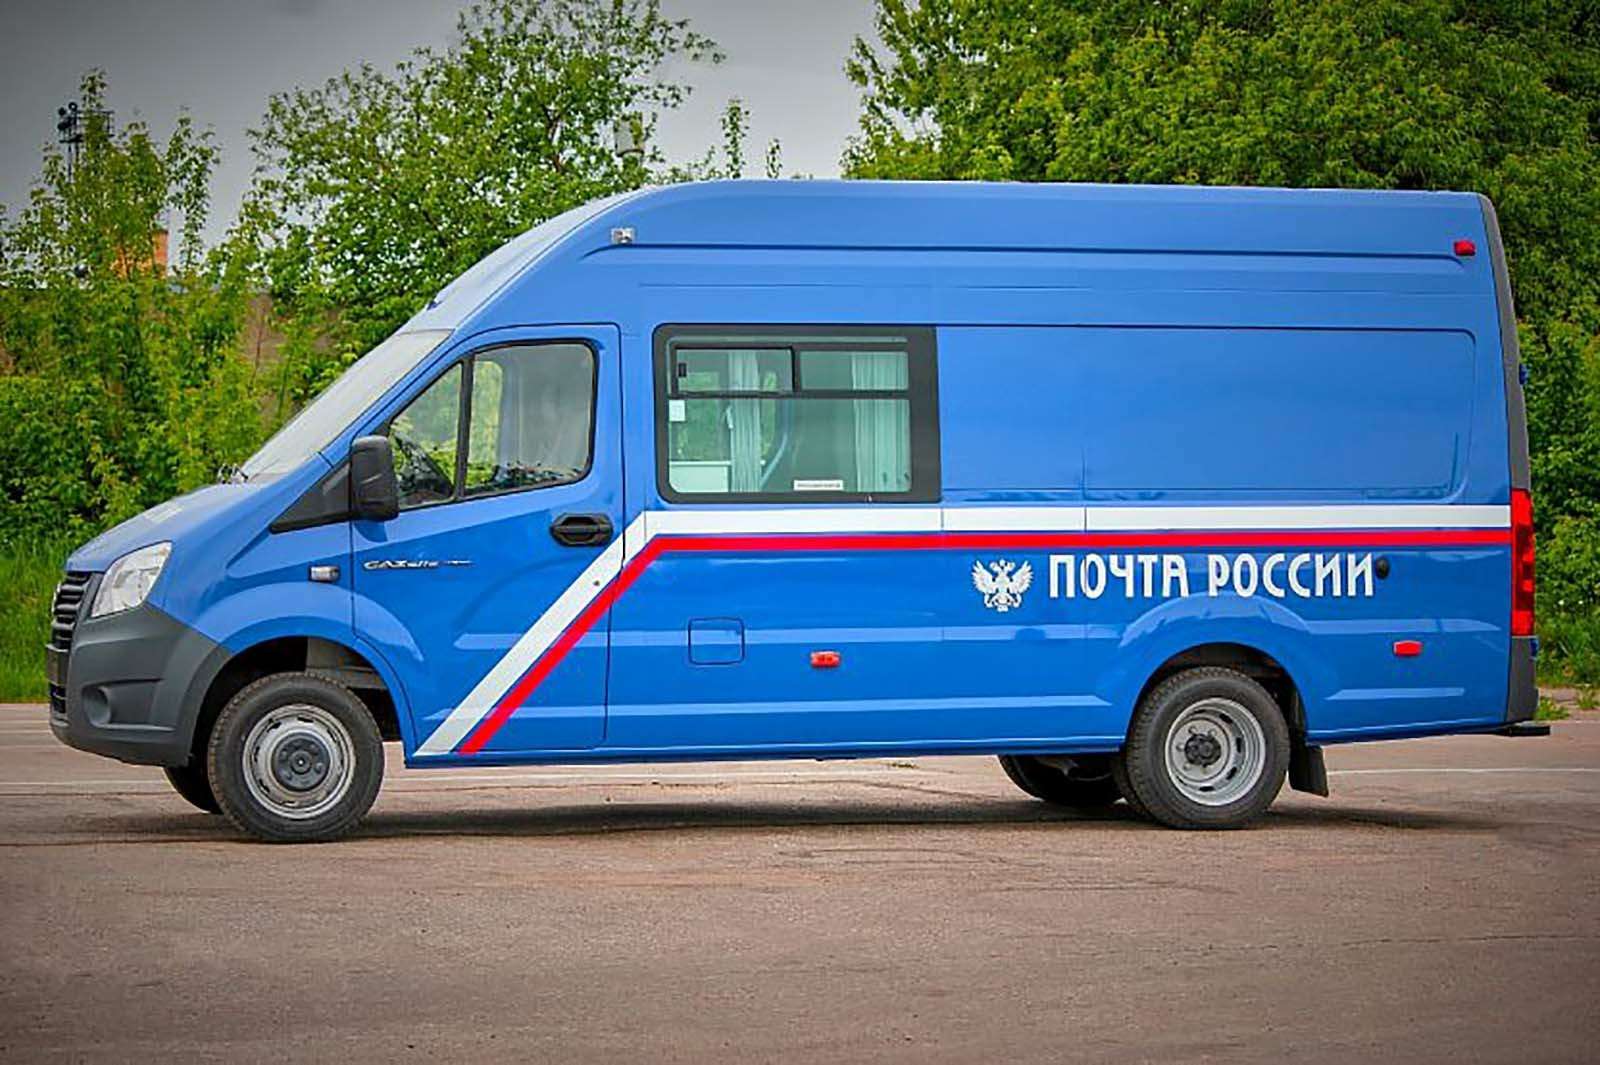 Очень быстрая «Почта России»: лучших водителей определят на треке